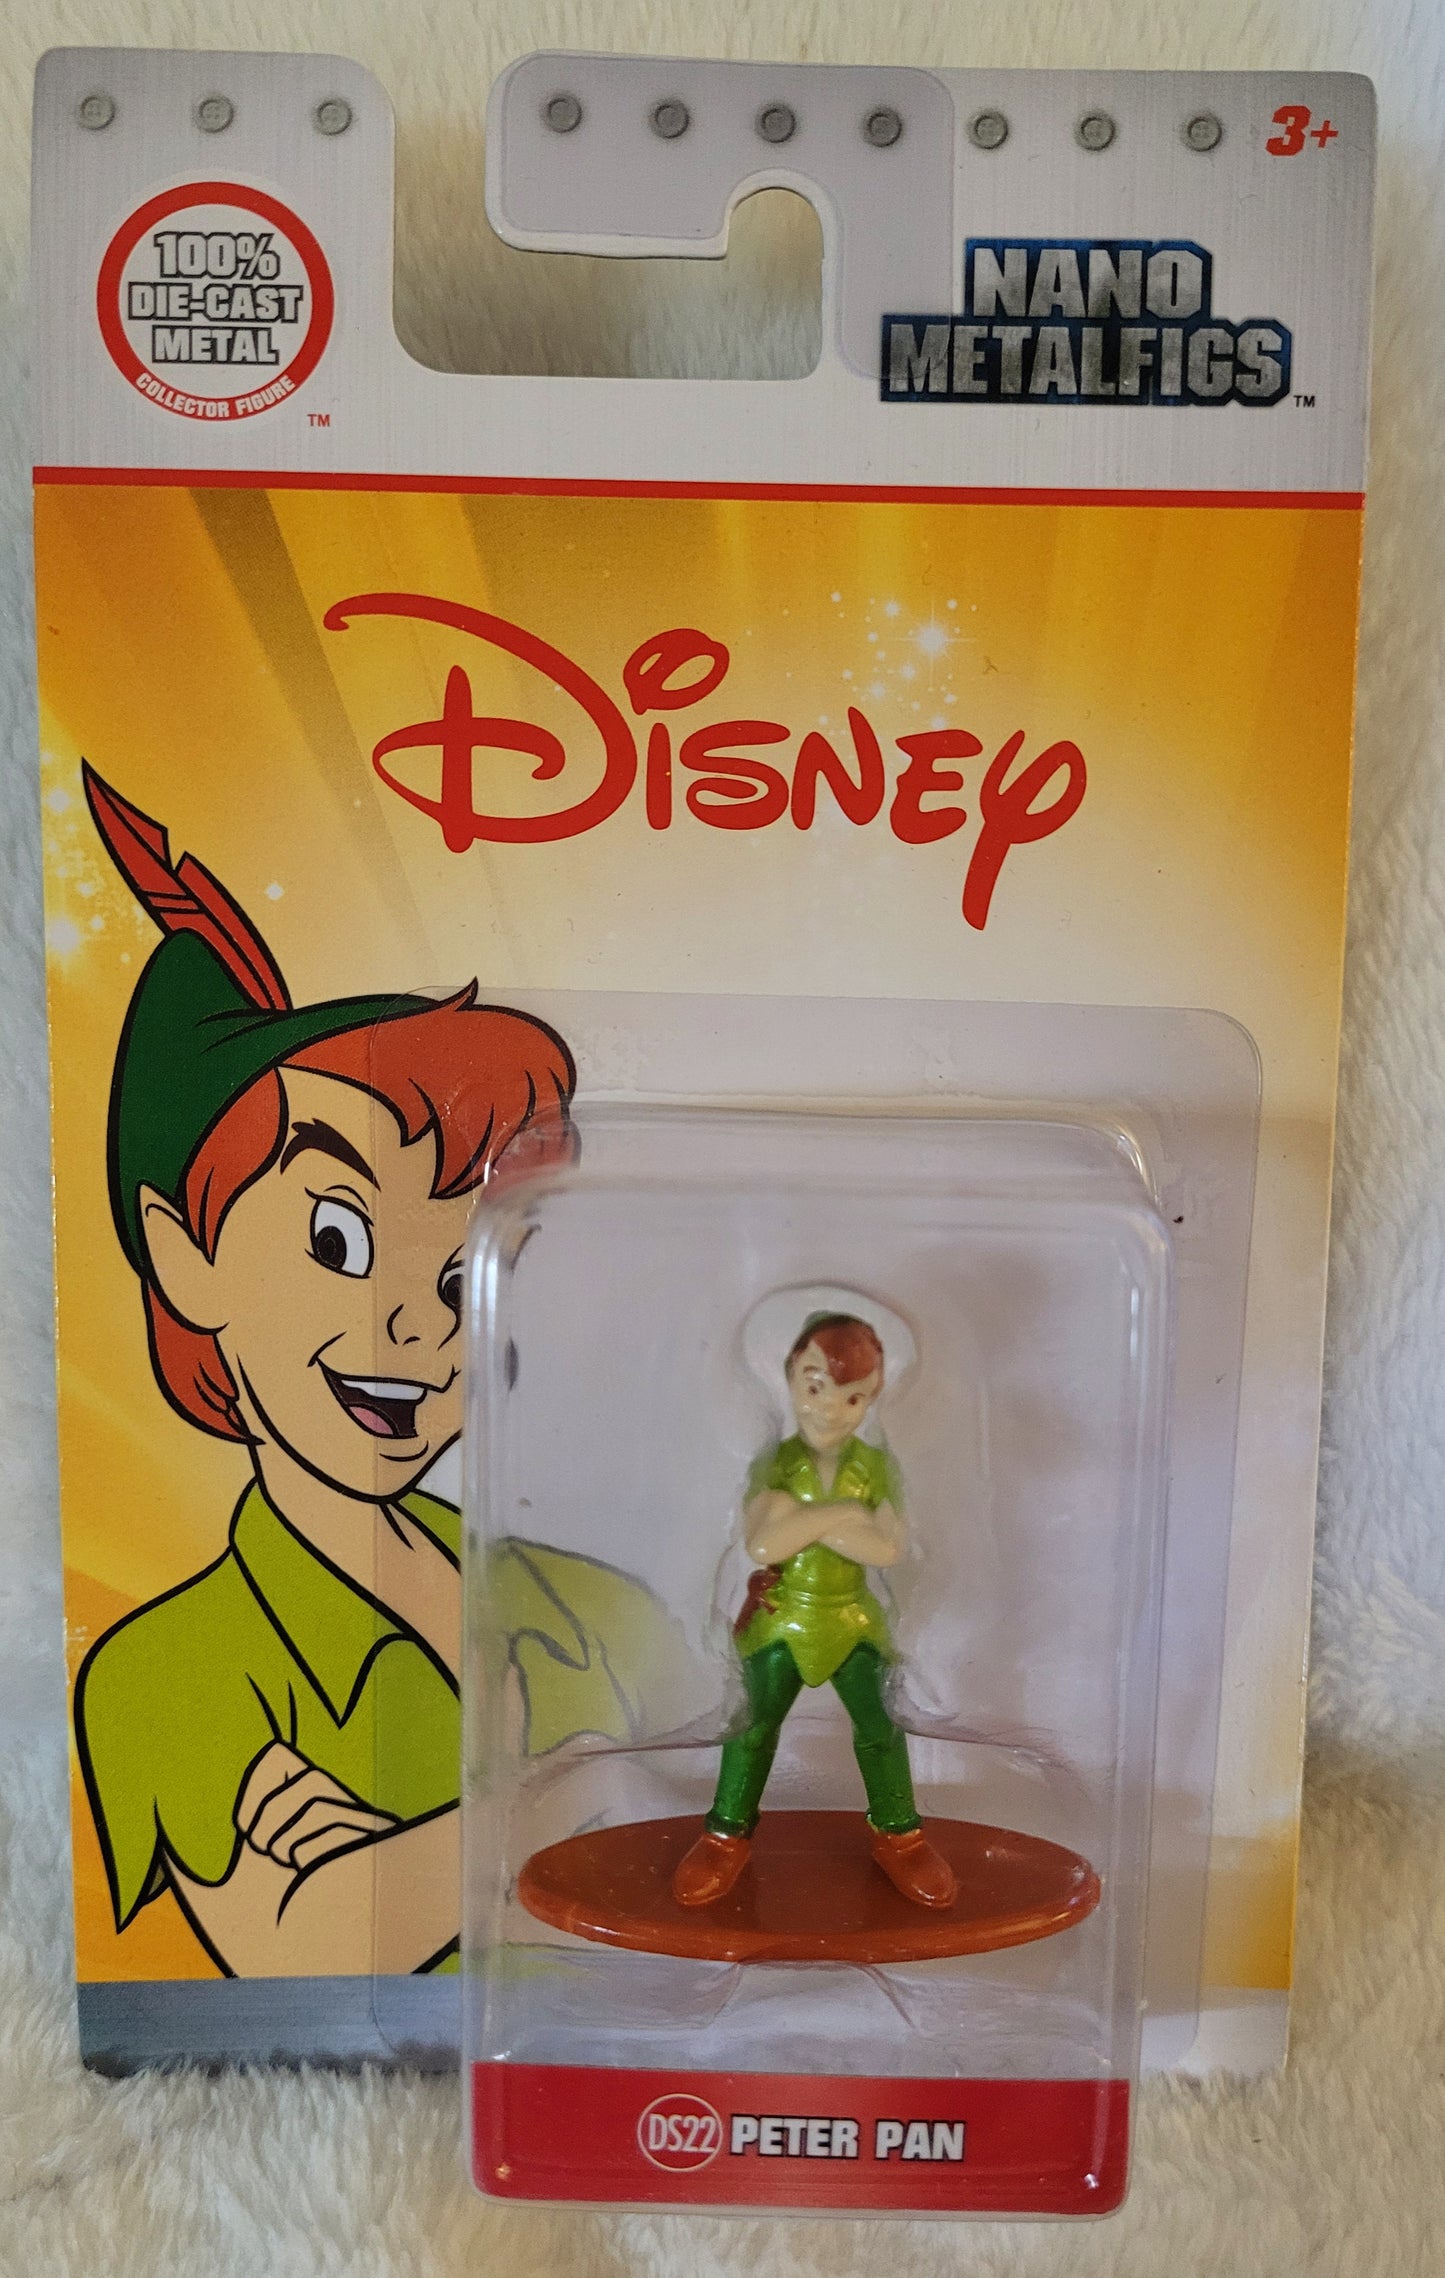 NEW *Disney Nano MetalFigs "Peter Pan" Die-Cast